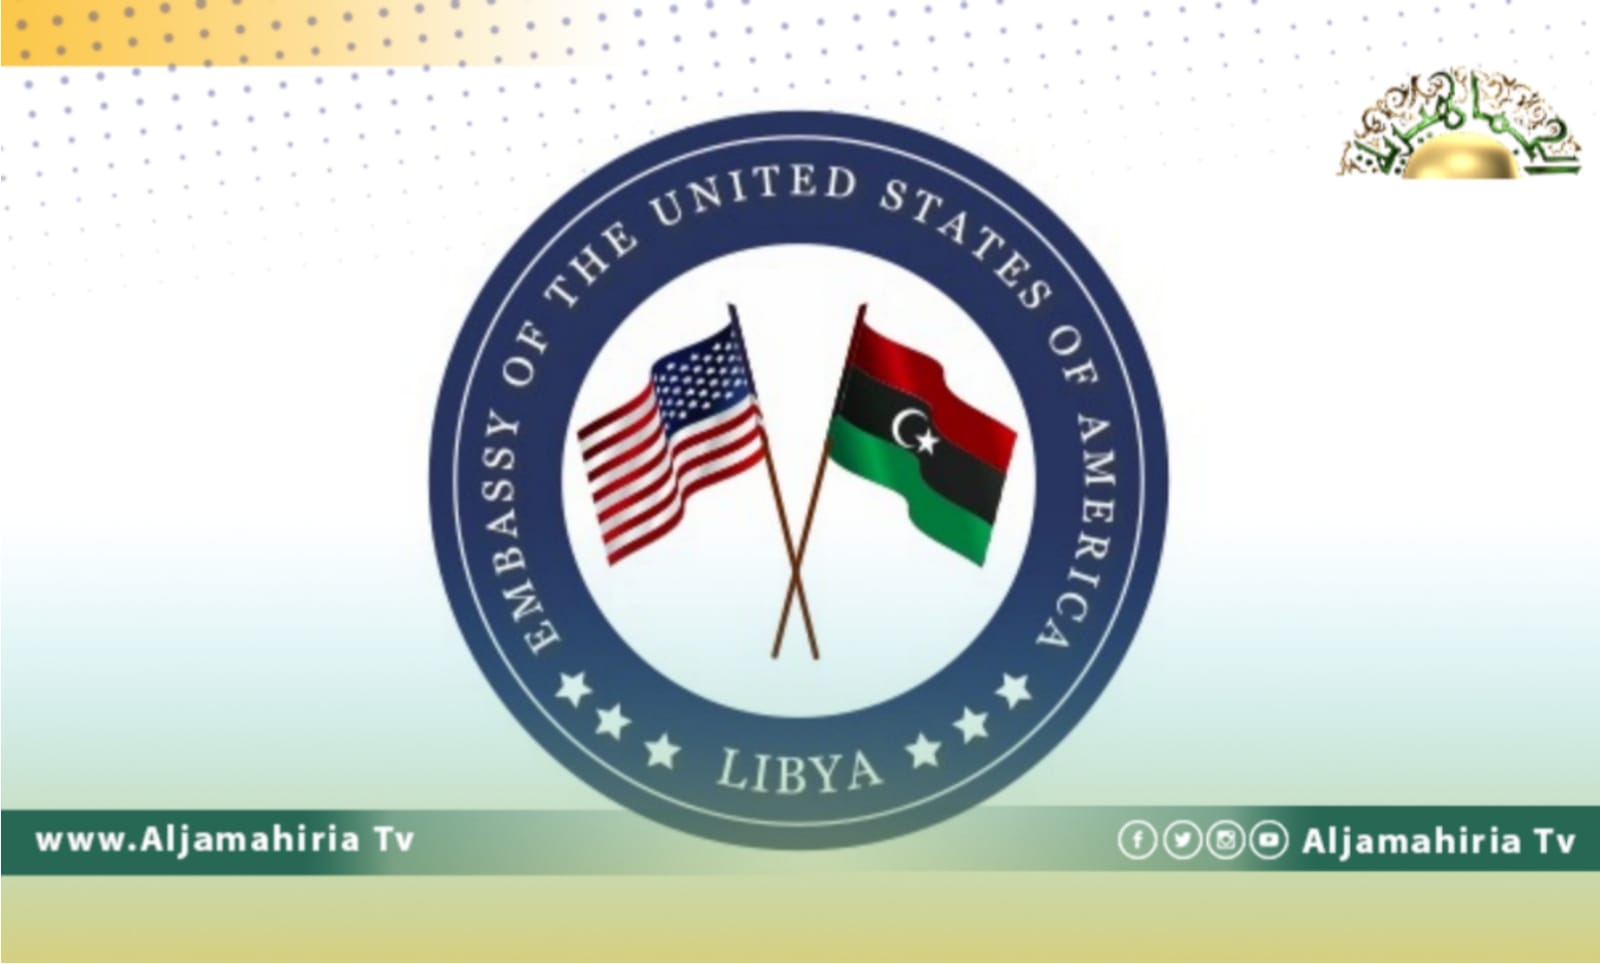 سفارة الولايات المتحدة تتأسف على اتهام المستشارة الأممية بالتحيز ومراقبون يعتبرون ذلك تدخلا